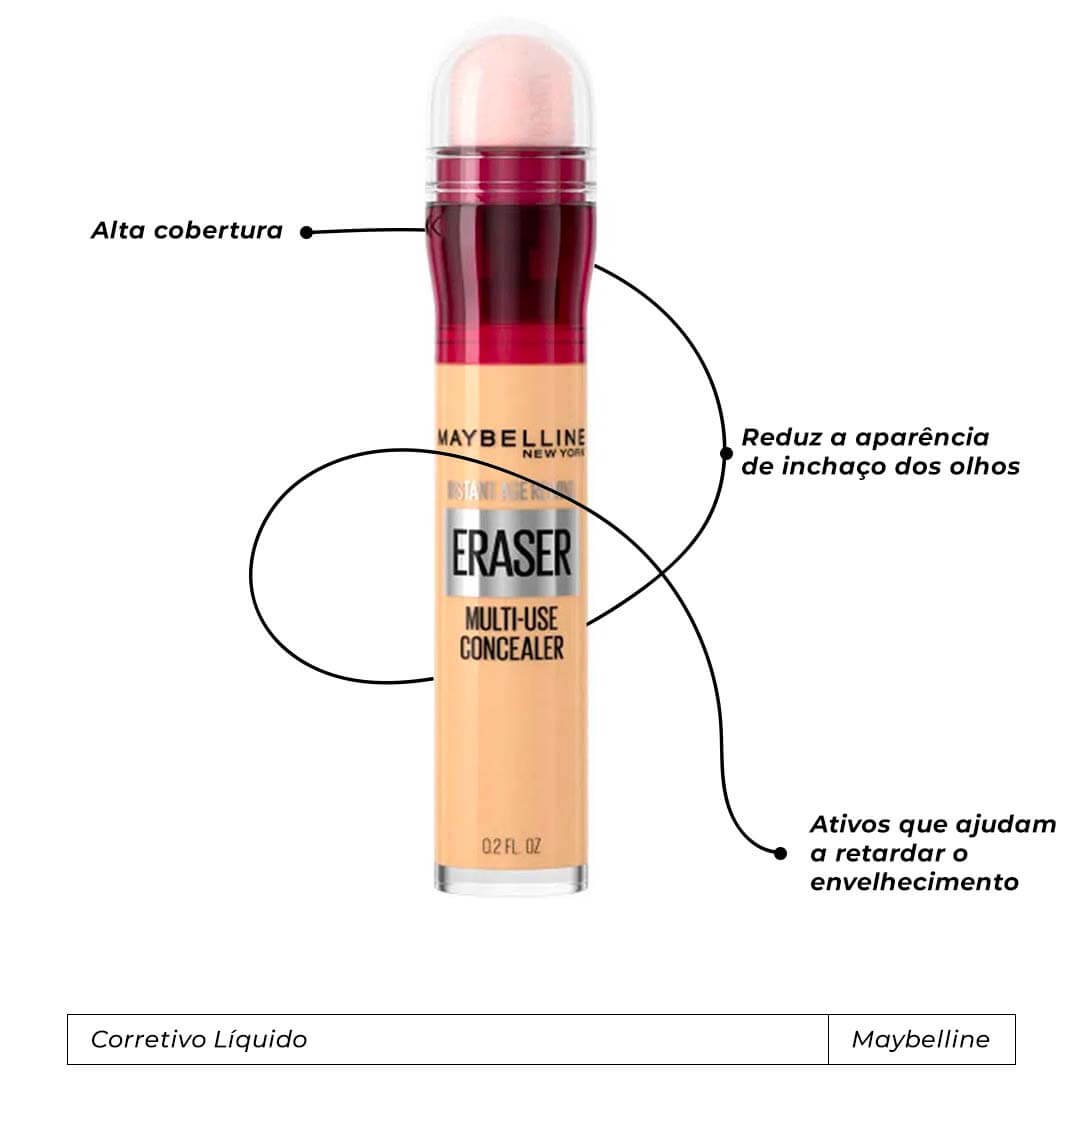 Maybelline - maquiagem-corretivo - produtos de maquiagem - inverno  - brasil - https://stealthelook.com.br